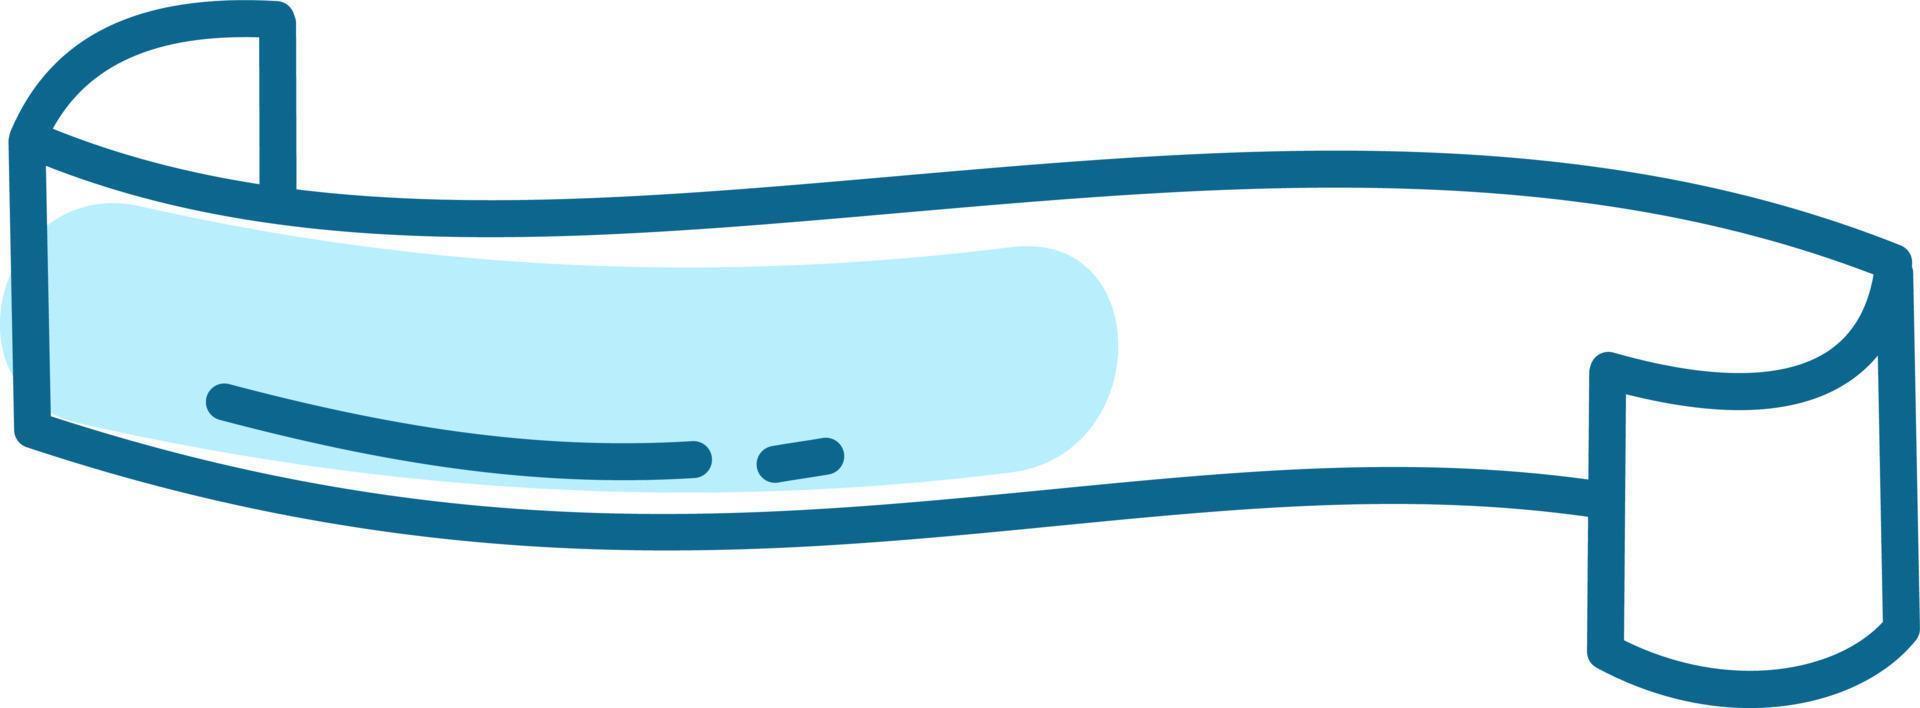 bannière bleue simple, illustration, vecteur sur fond blanc.